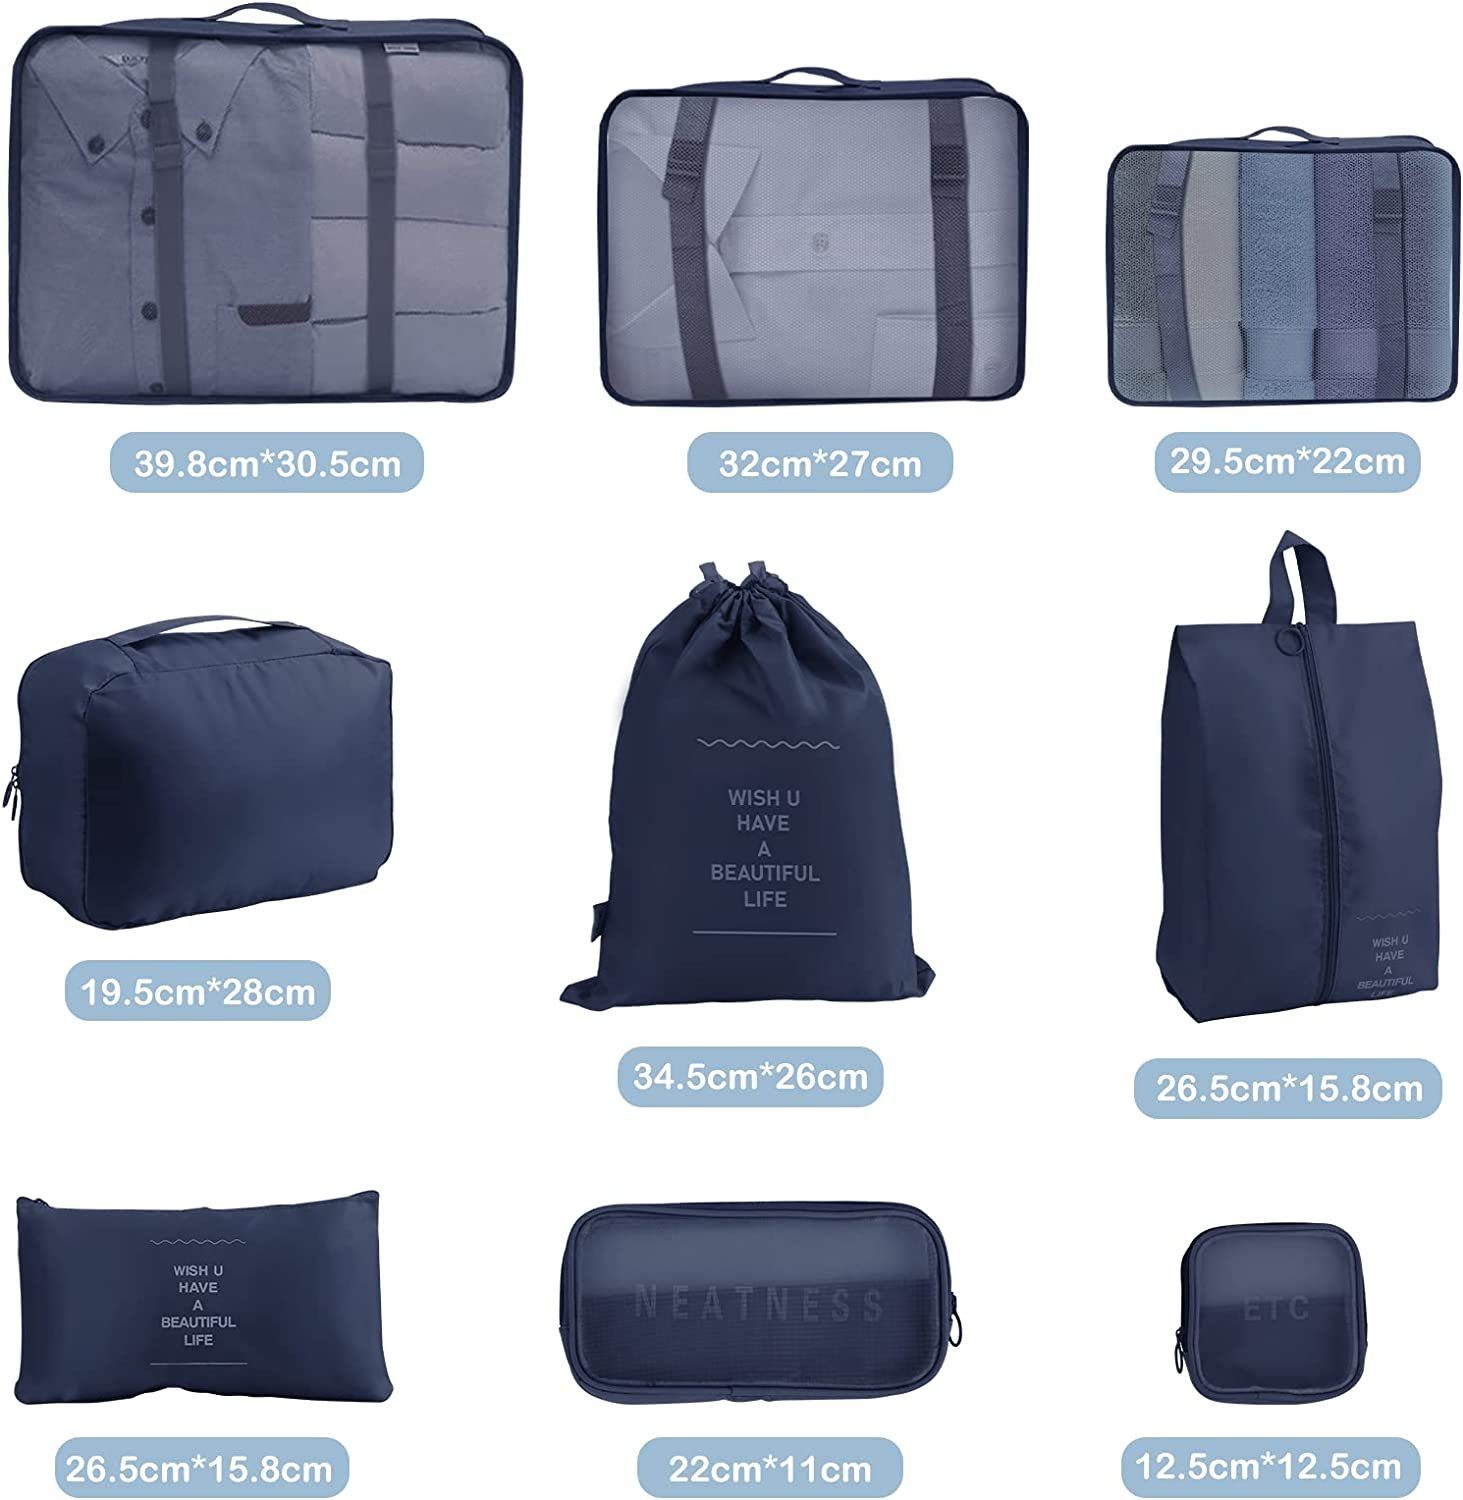 zggzerg Kofferorganizer Packing Cubes Suitcase,Organizer for Schuhtaschen mit Reisezubehör blau für